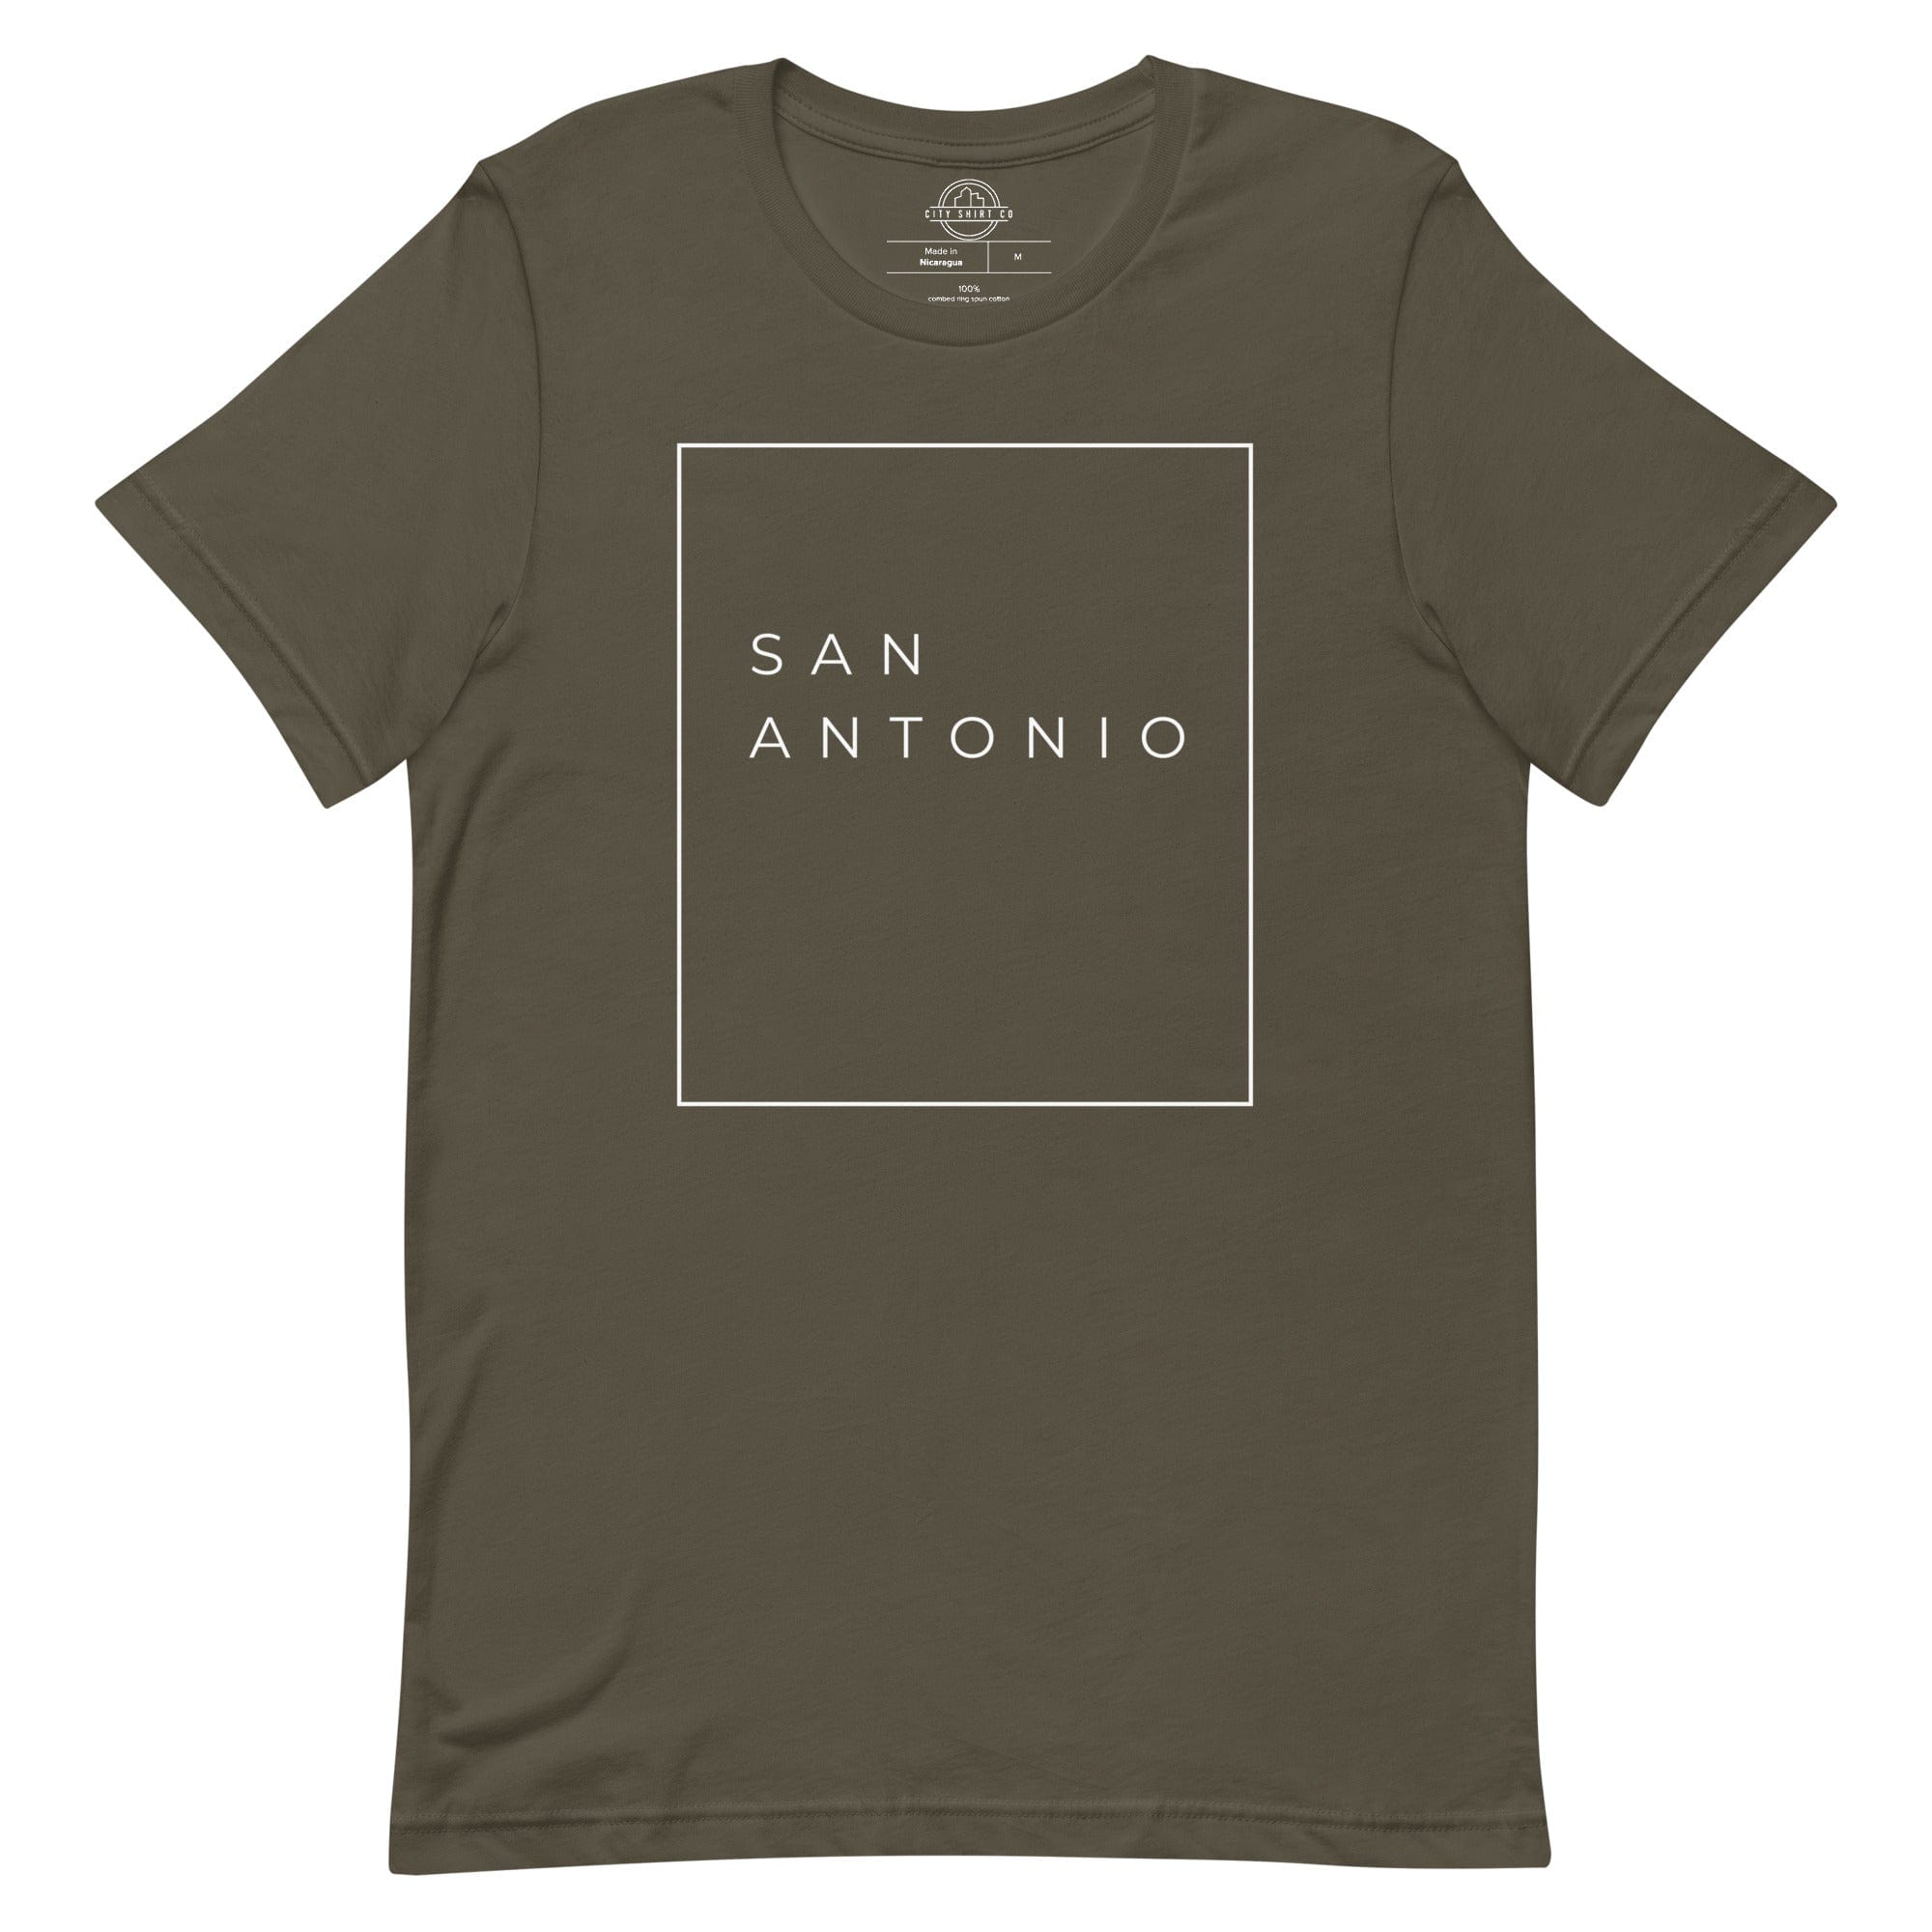 City Shirt Co San Antonio Essential T-Shirt Army / S